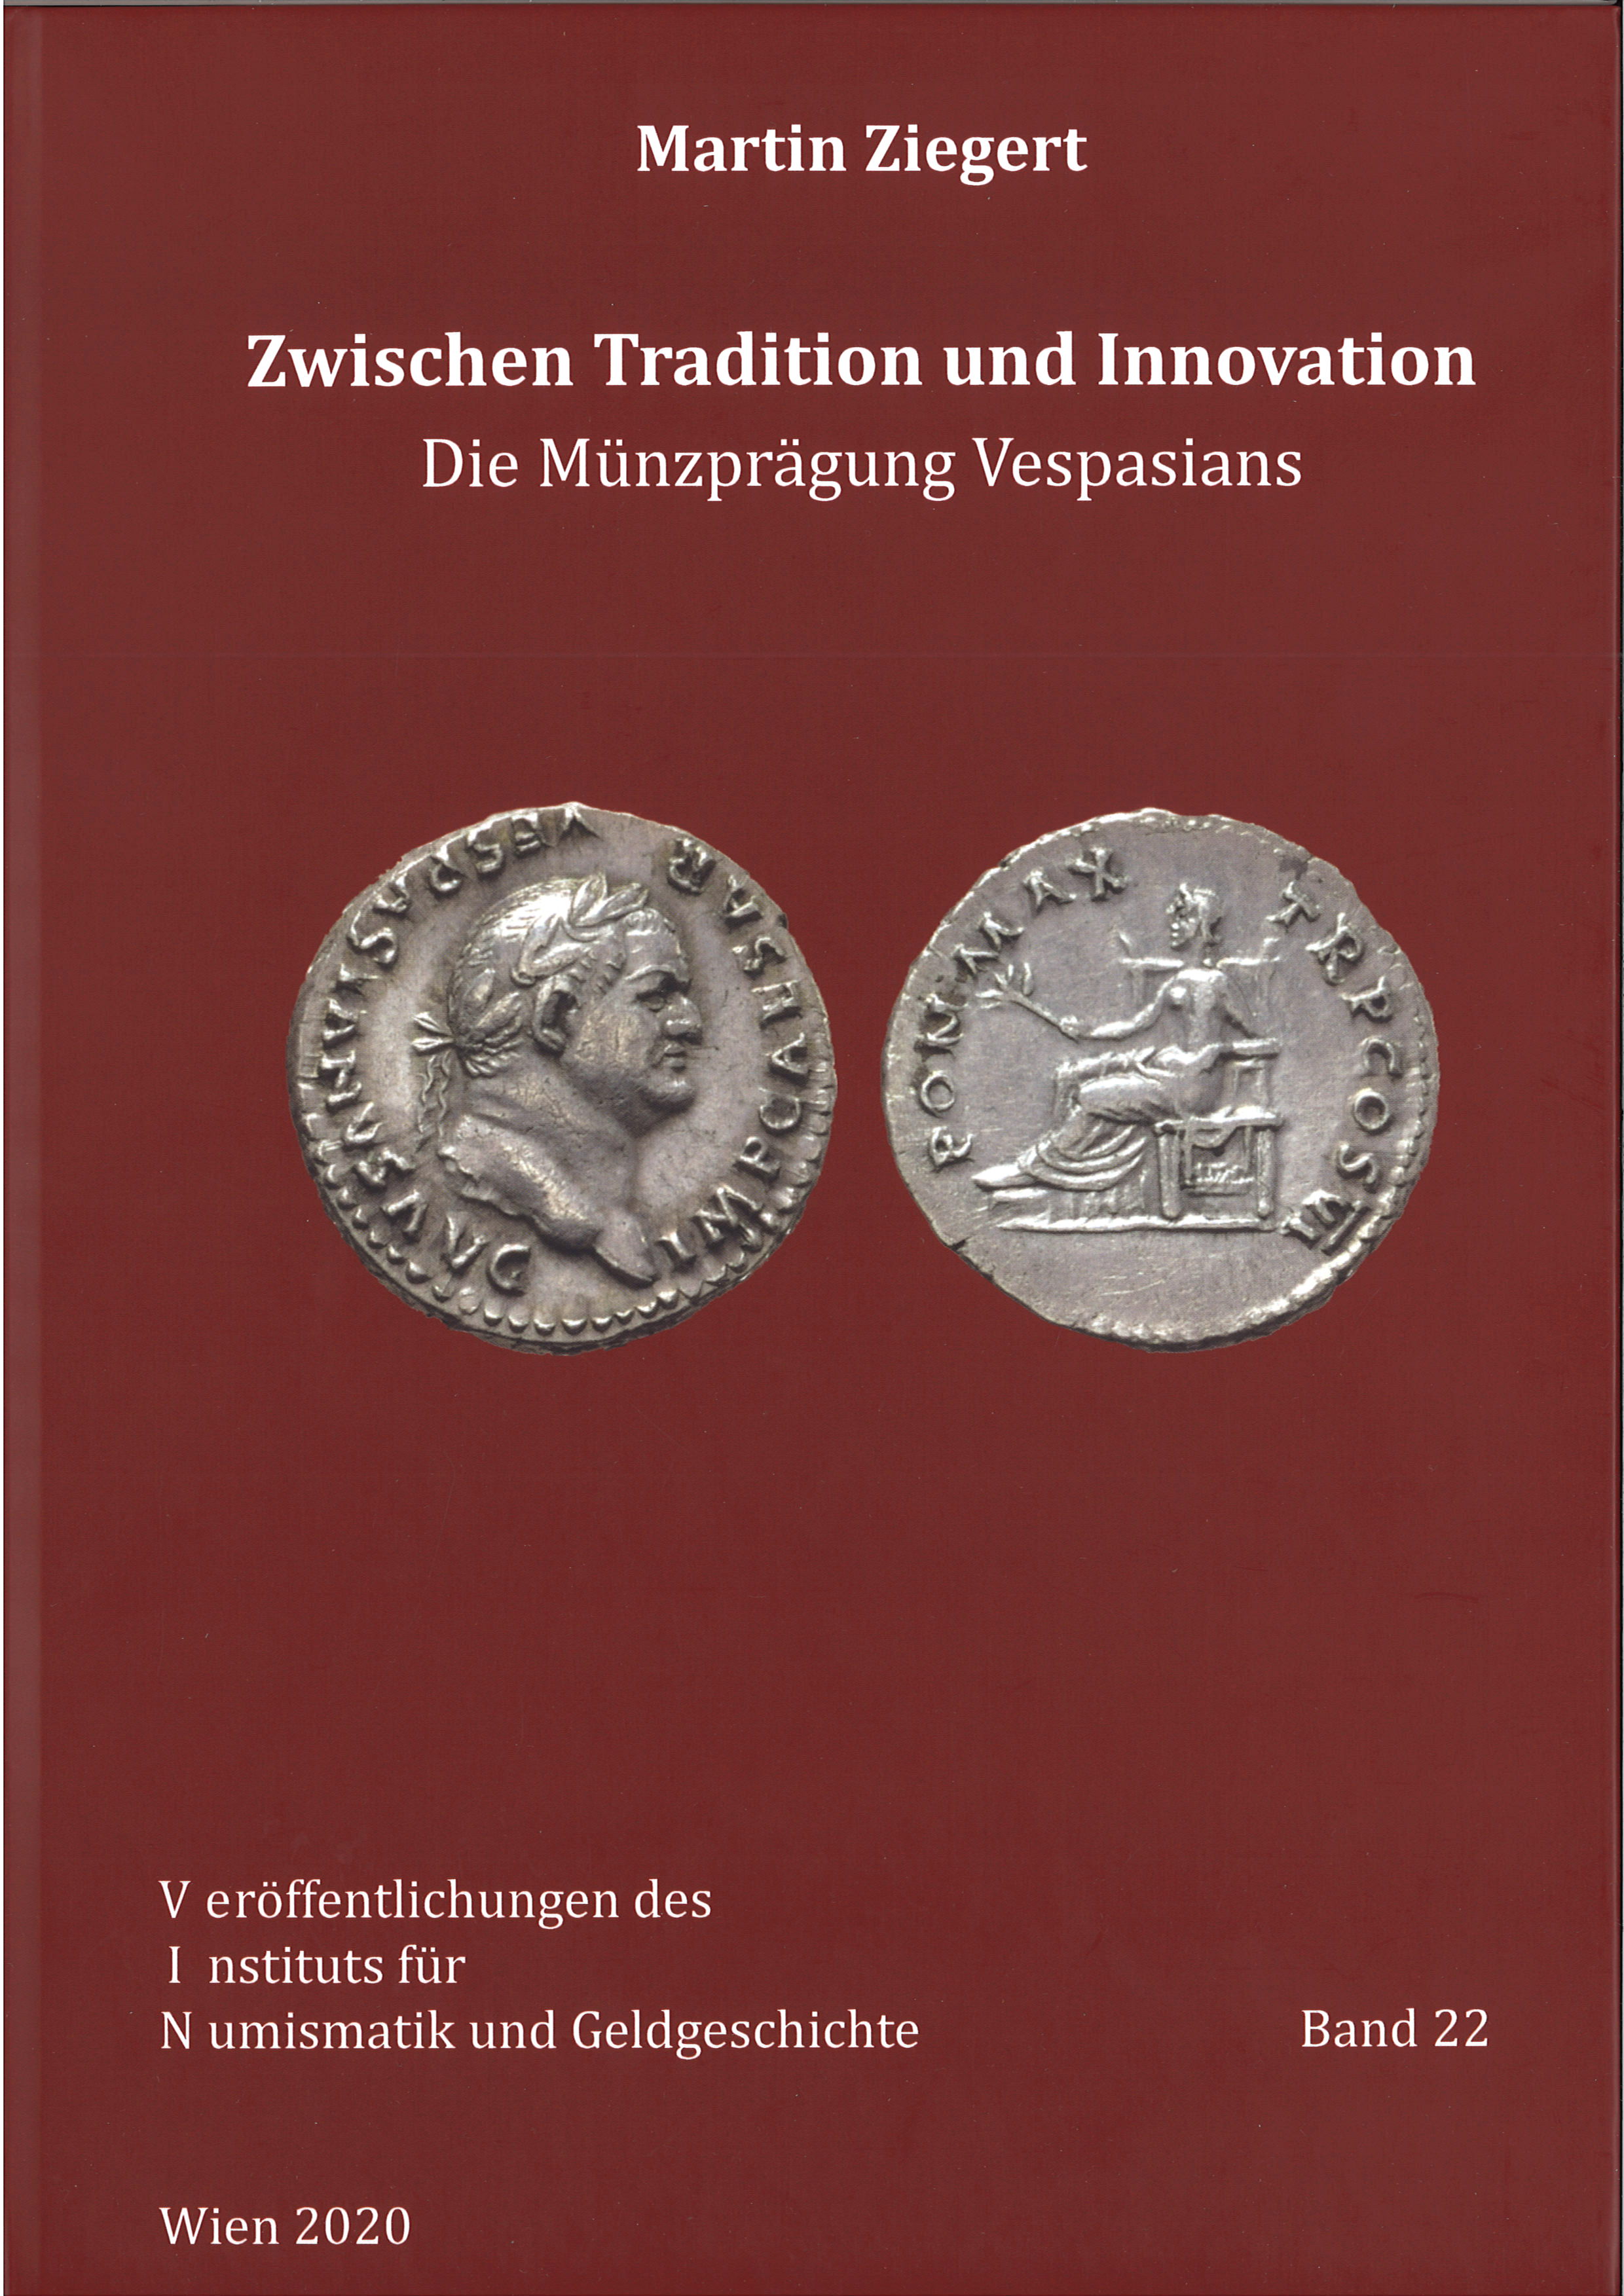 Ziegert, Martin : Zwischen Tradition und Innovation. Die Münzprägung Vespasians.